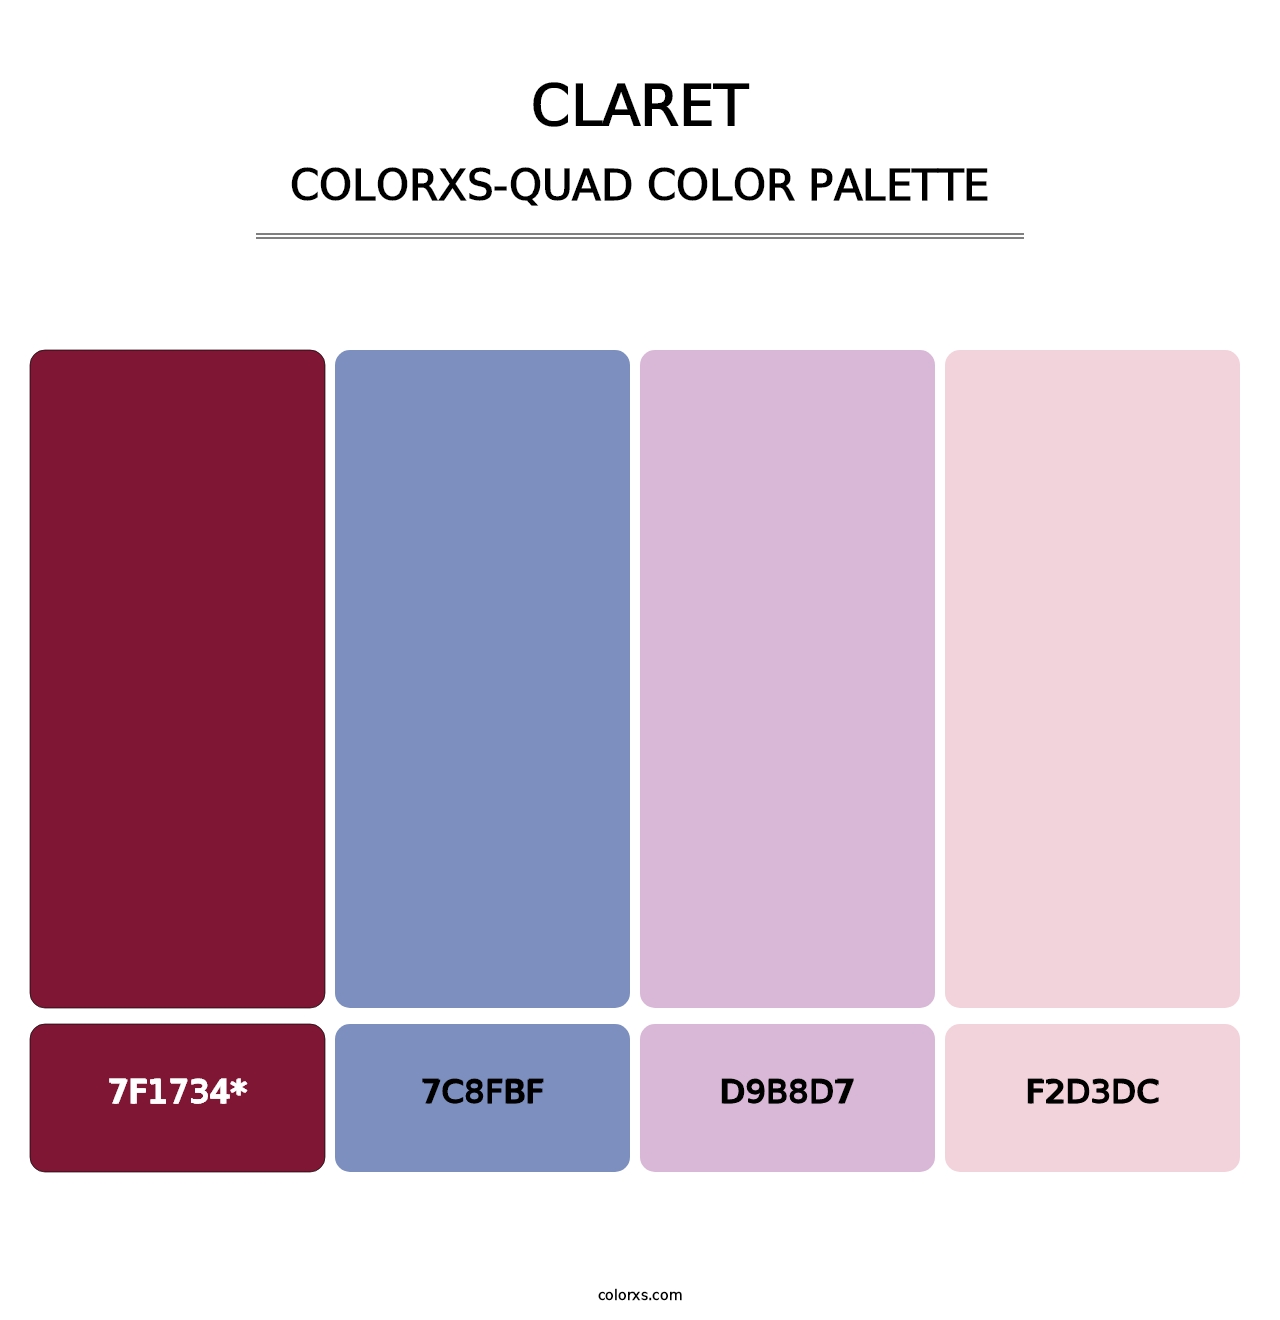 Claret - Colorxs Quad Palette